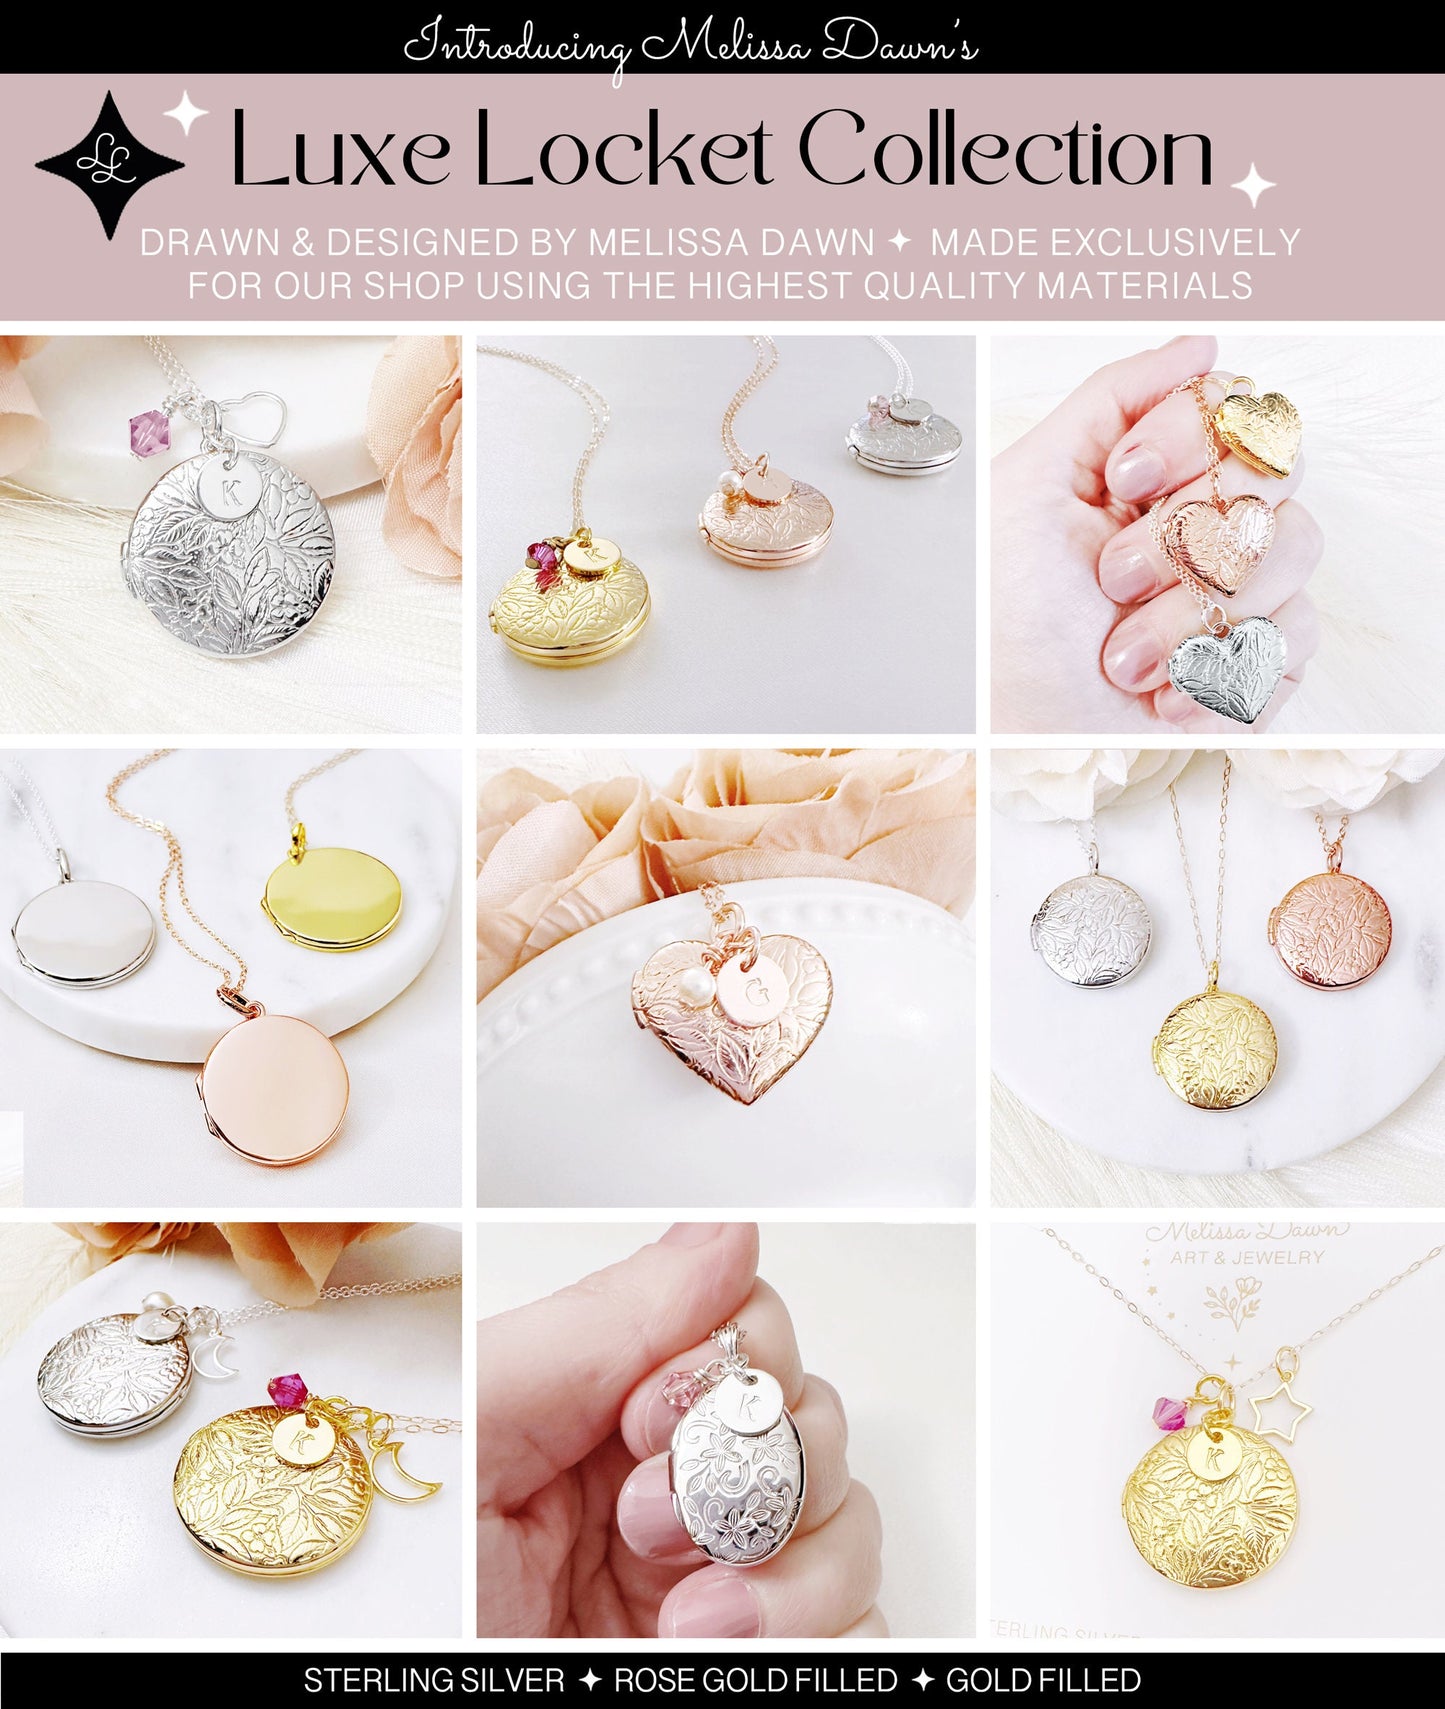 Heart Charm Locket / Heart Locket / Locket With Heart Charm / Flower Locket / Locket Necklace/ Photo Locket / Locket With Photos / Custom